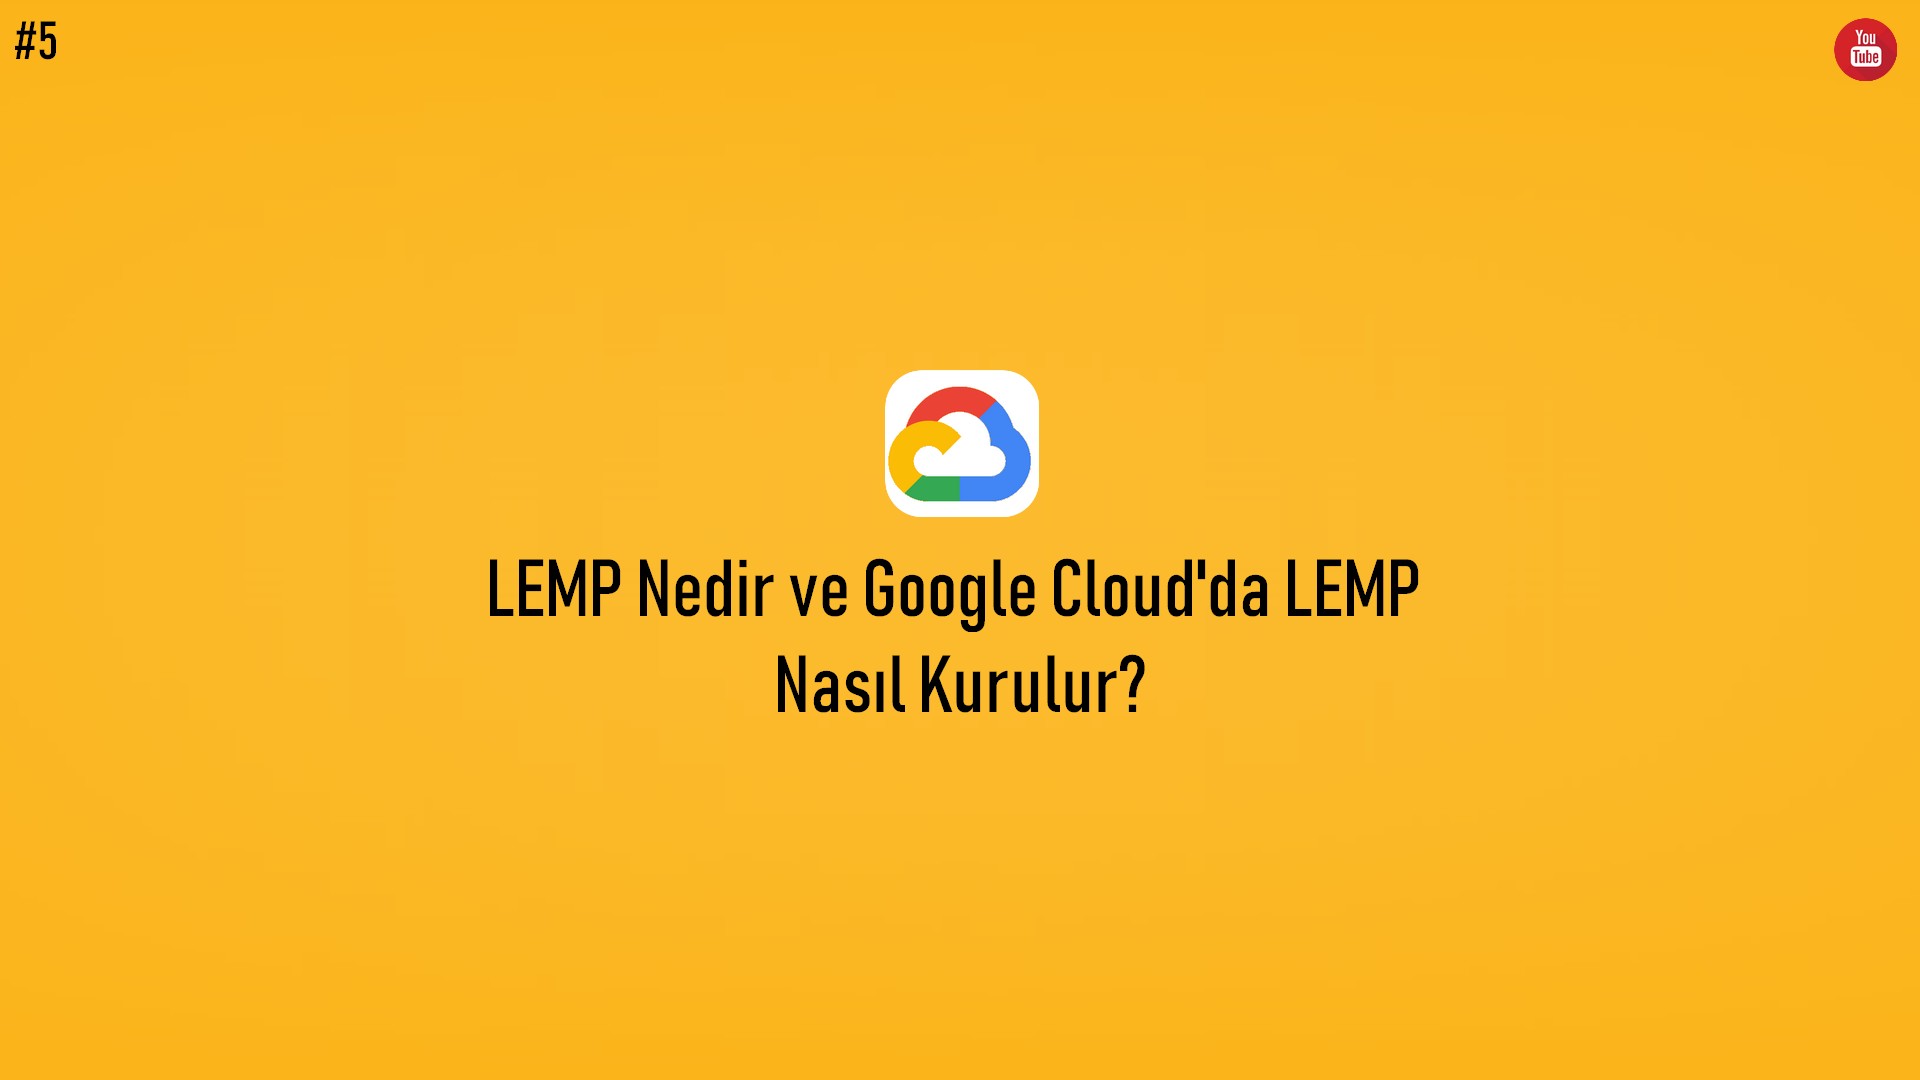 LEMP Nedir ve Google Cloud'da LEMP Nasıl Kurulur? (Video İçerik) başlıklı içeriğin resmi